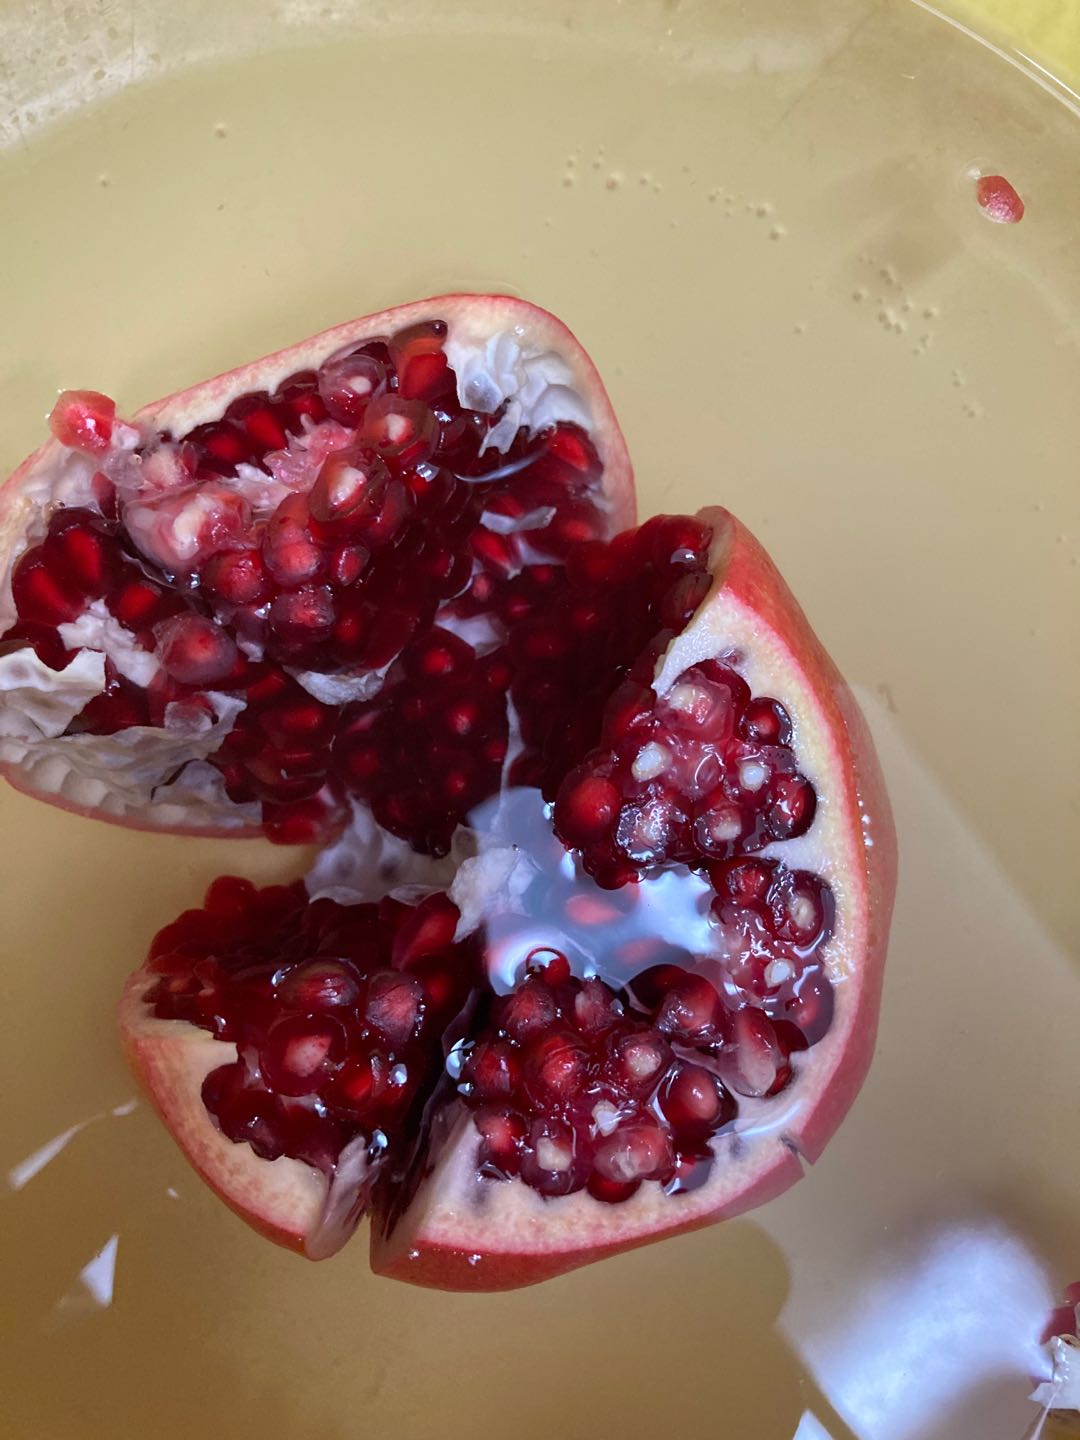 Austin pomegranate, cut open